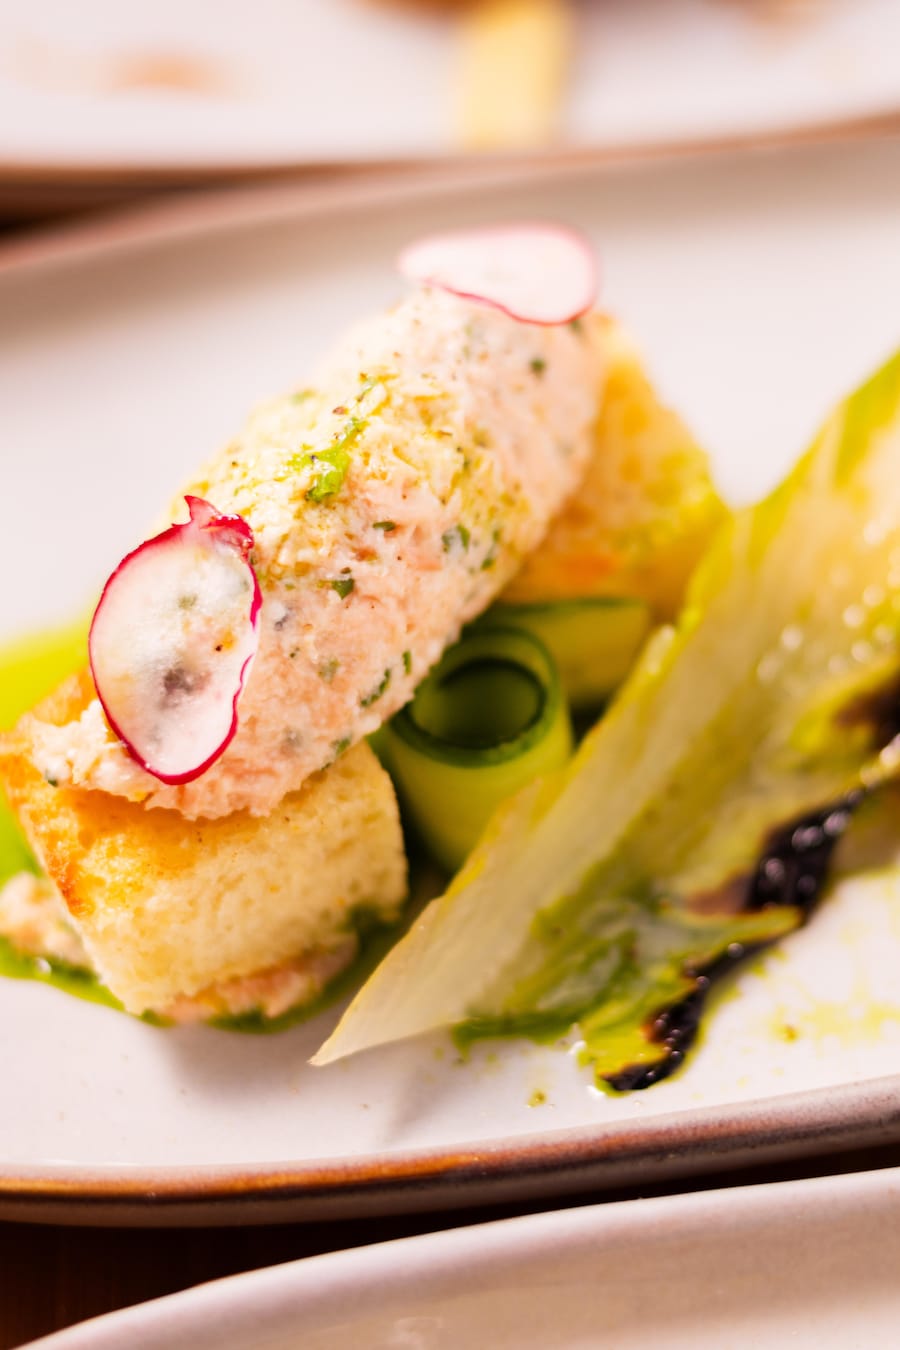 De la rillette de saumon dans une assiette avec des croûtons, des légumes croquants et une vinaigrette aux herbes.